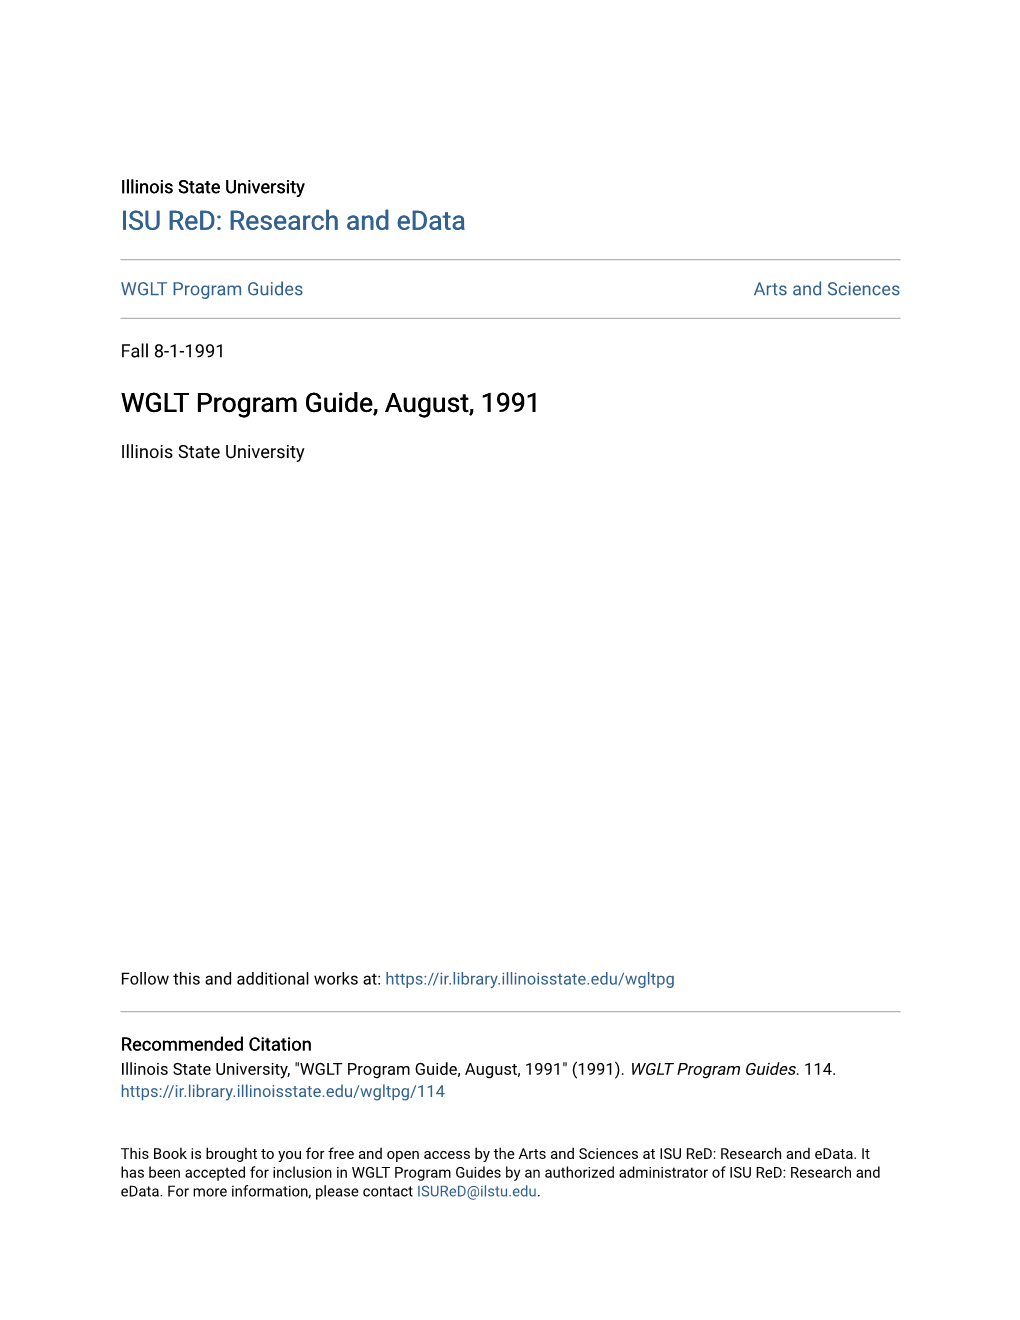 WGLT Program Guide, August, 1991